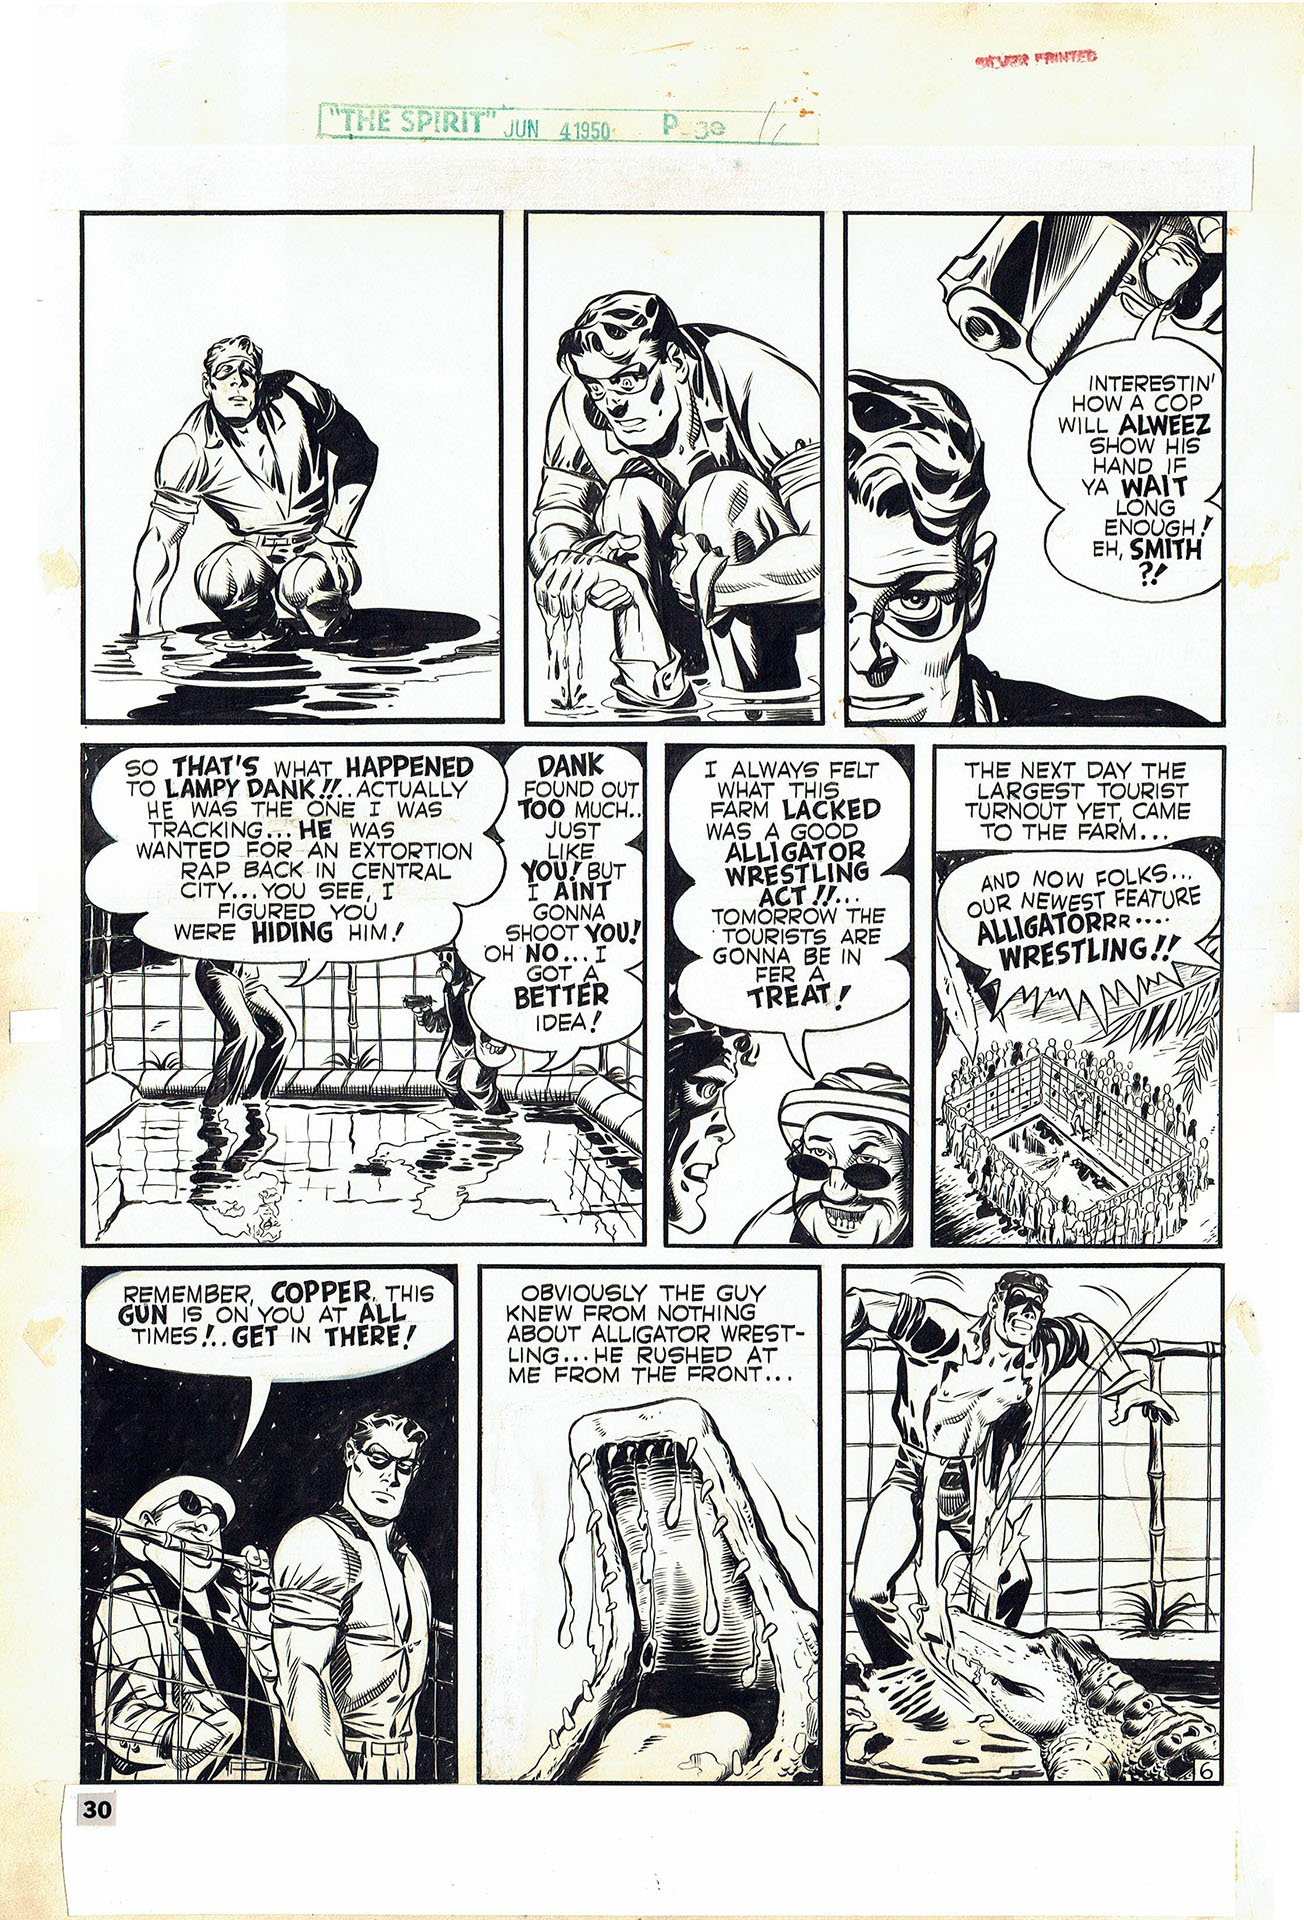 Will-Eisner-The-Spirit-4-juin-1950-Allig